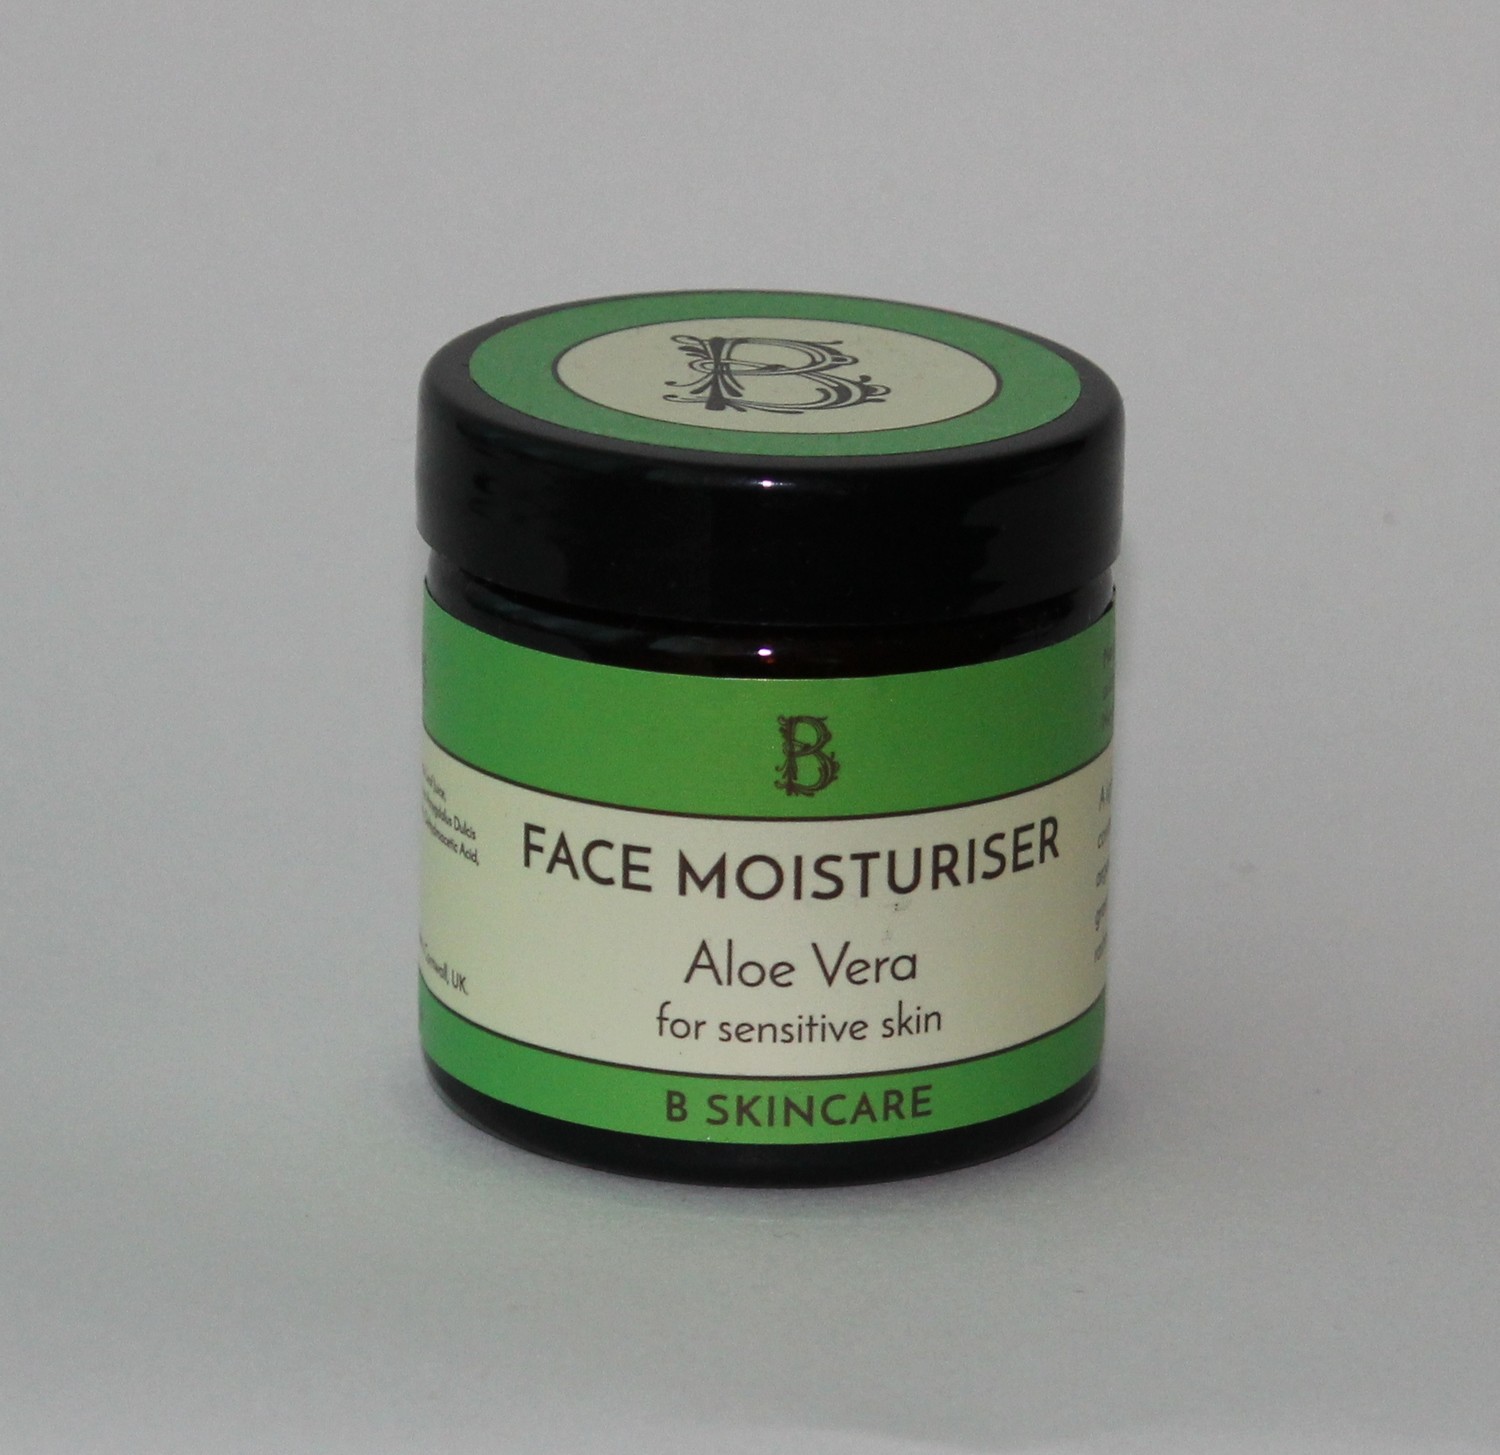 B Skincare Aloe Vera moisturiser